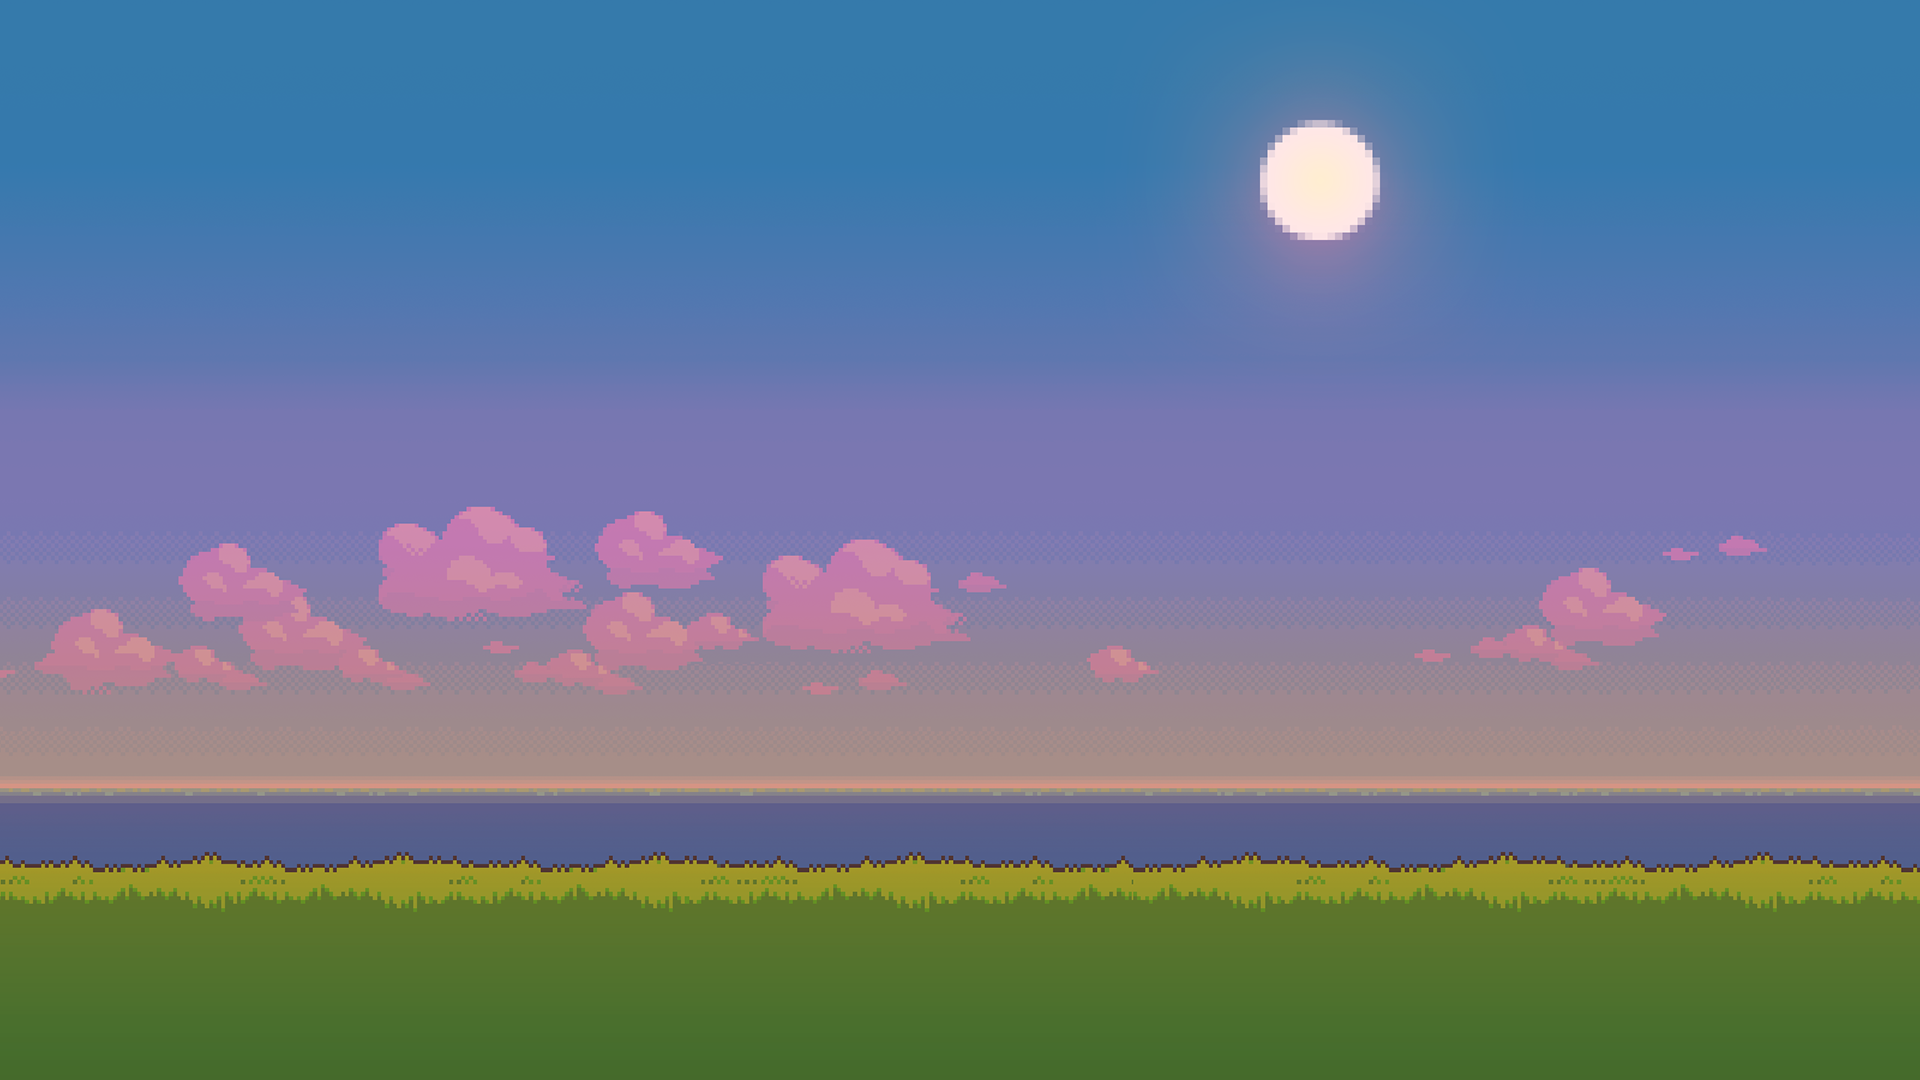 Pixel Scenery Background